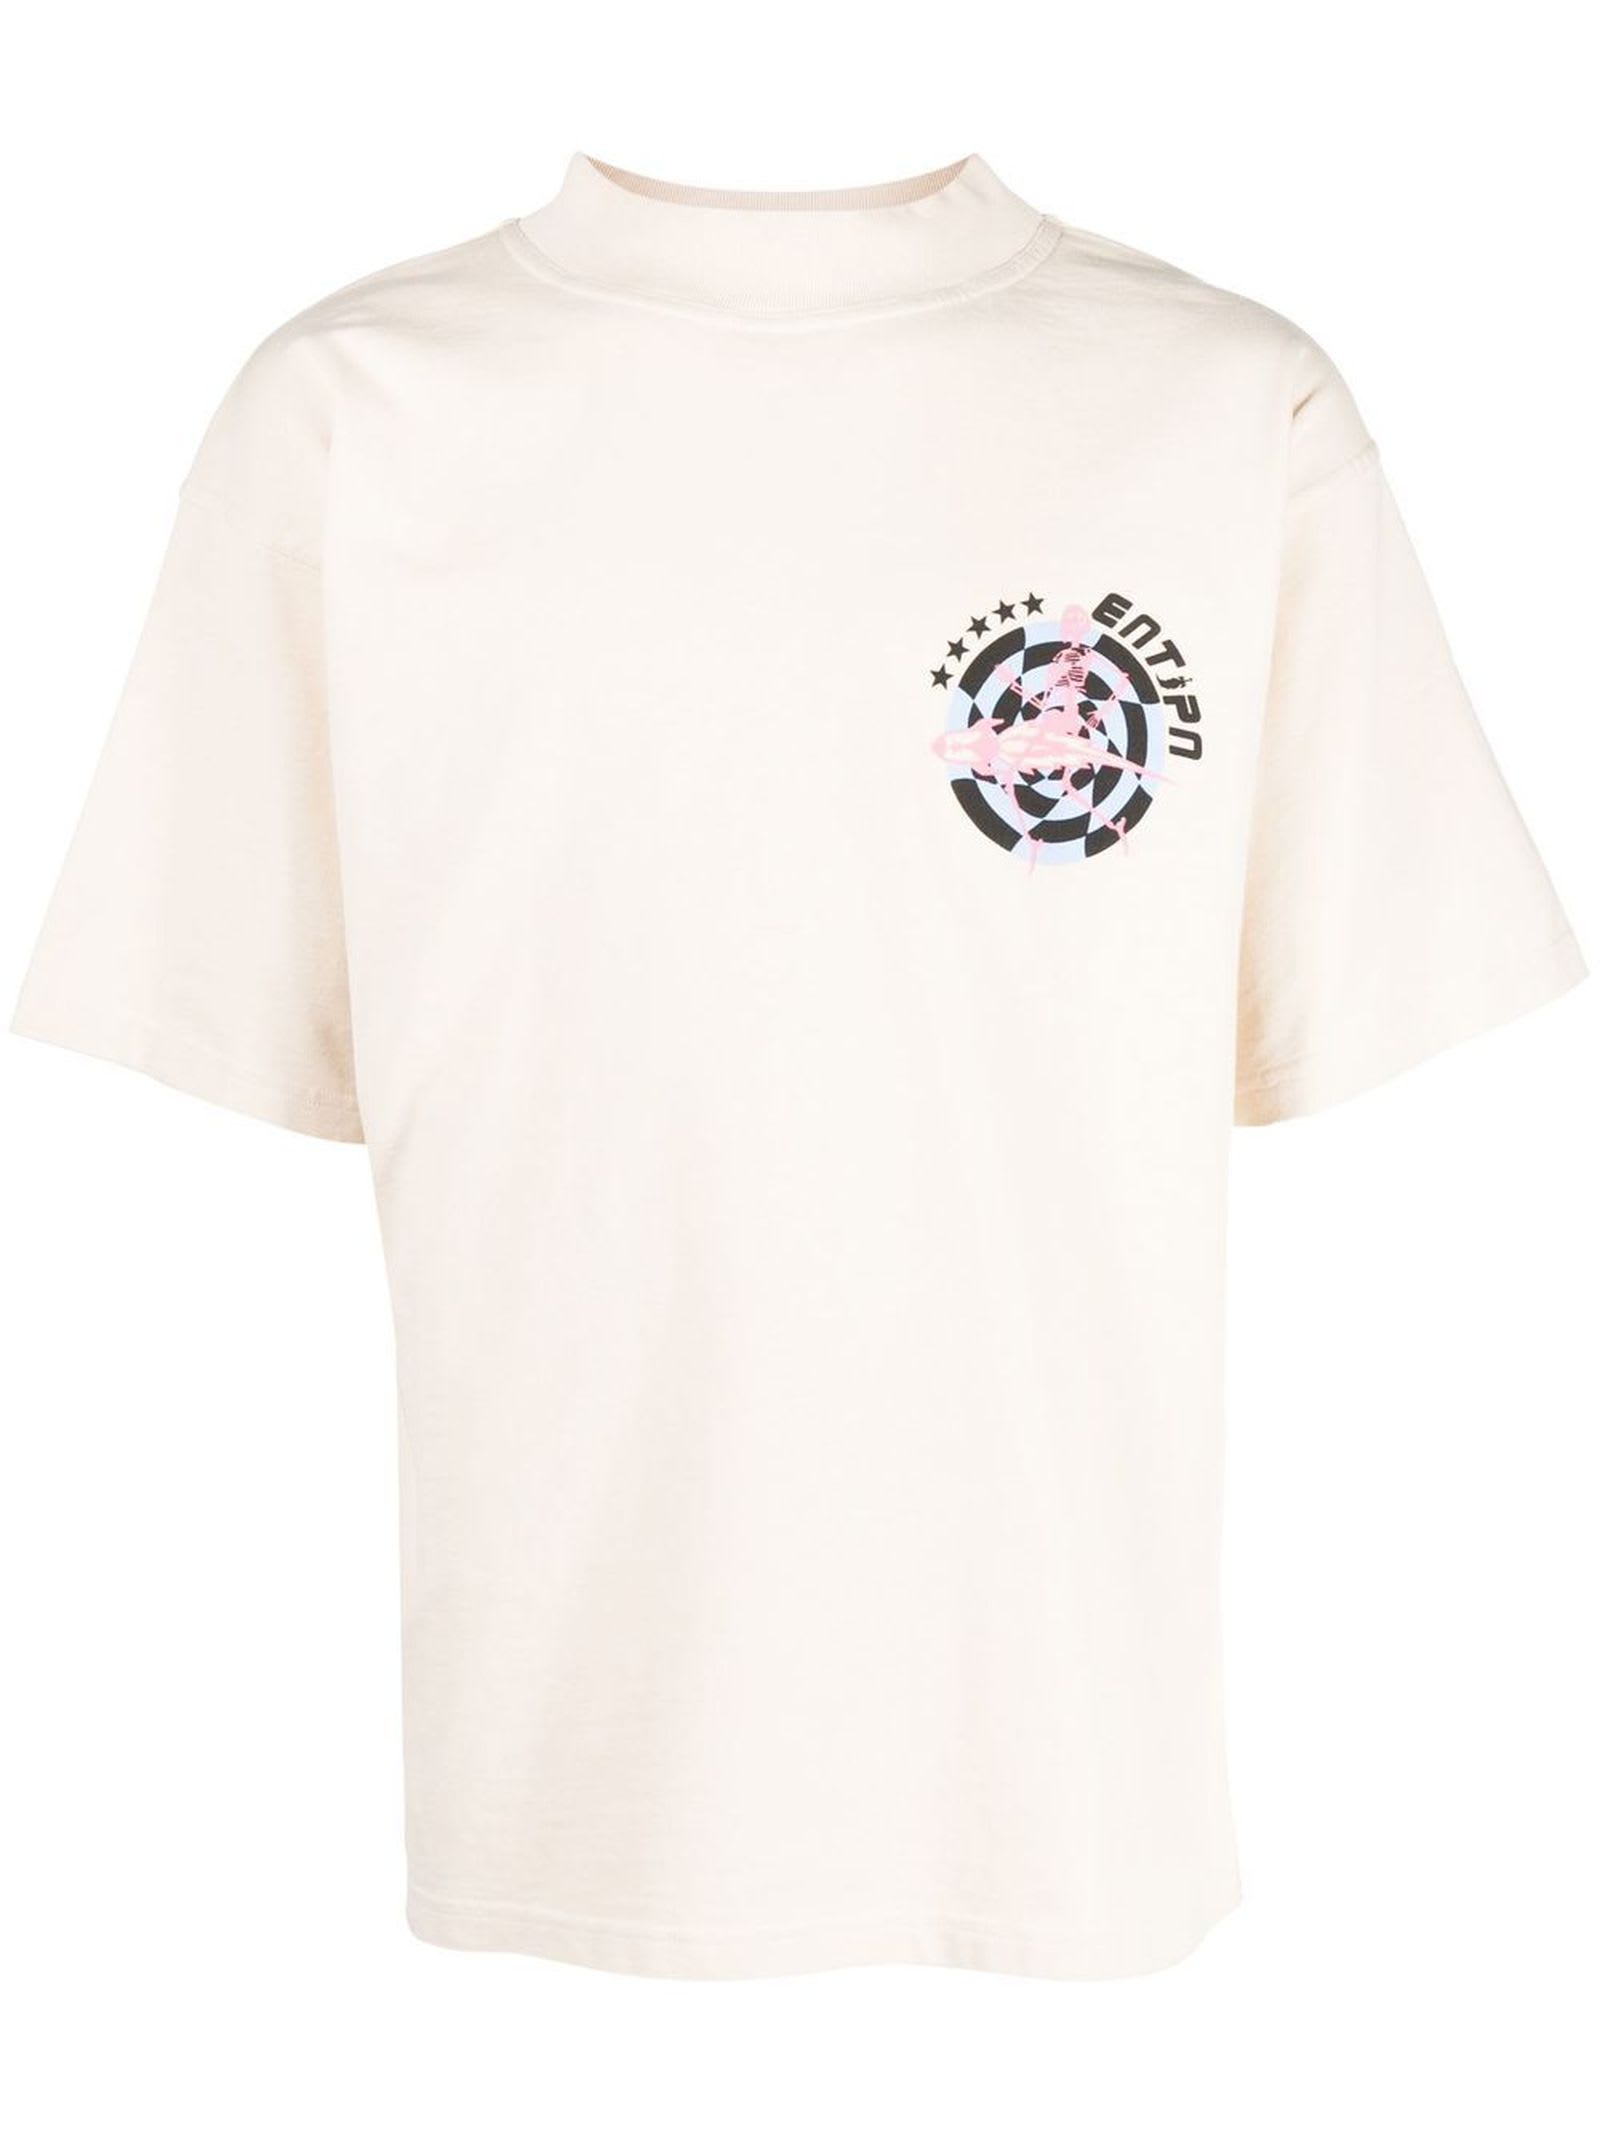 Enterprise Japan Beige Cotton T-shirt